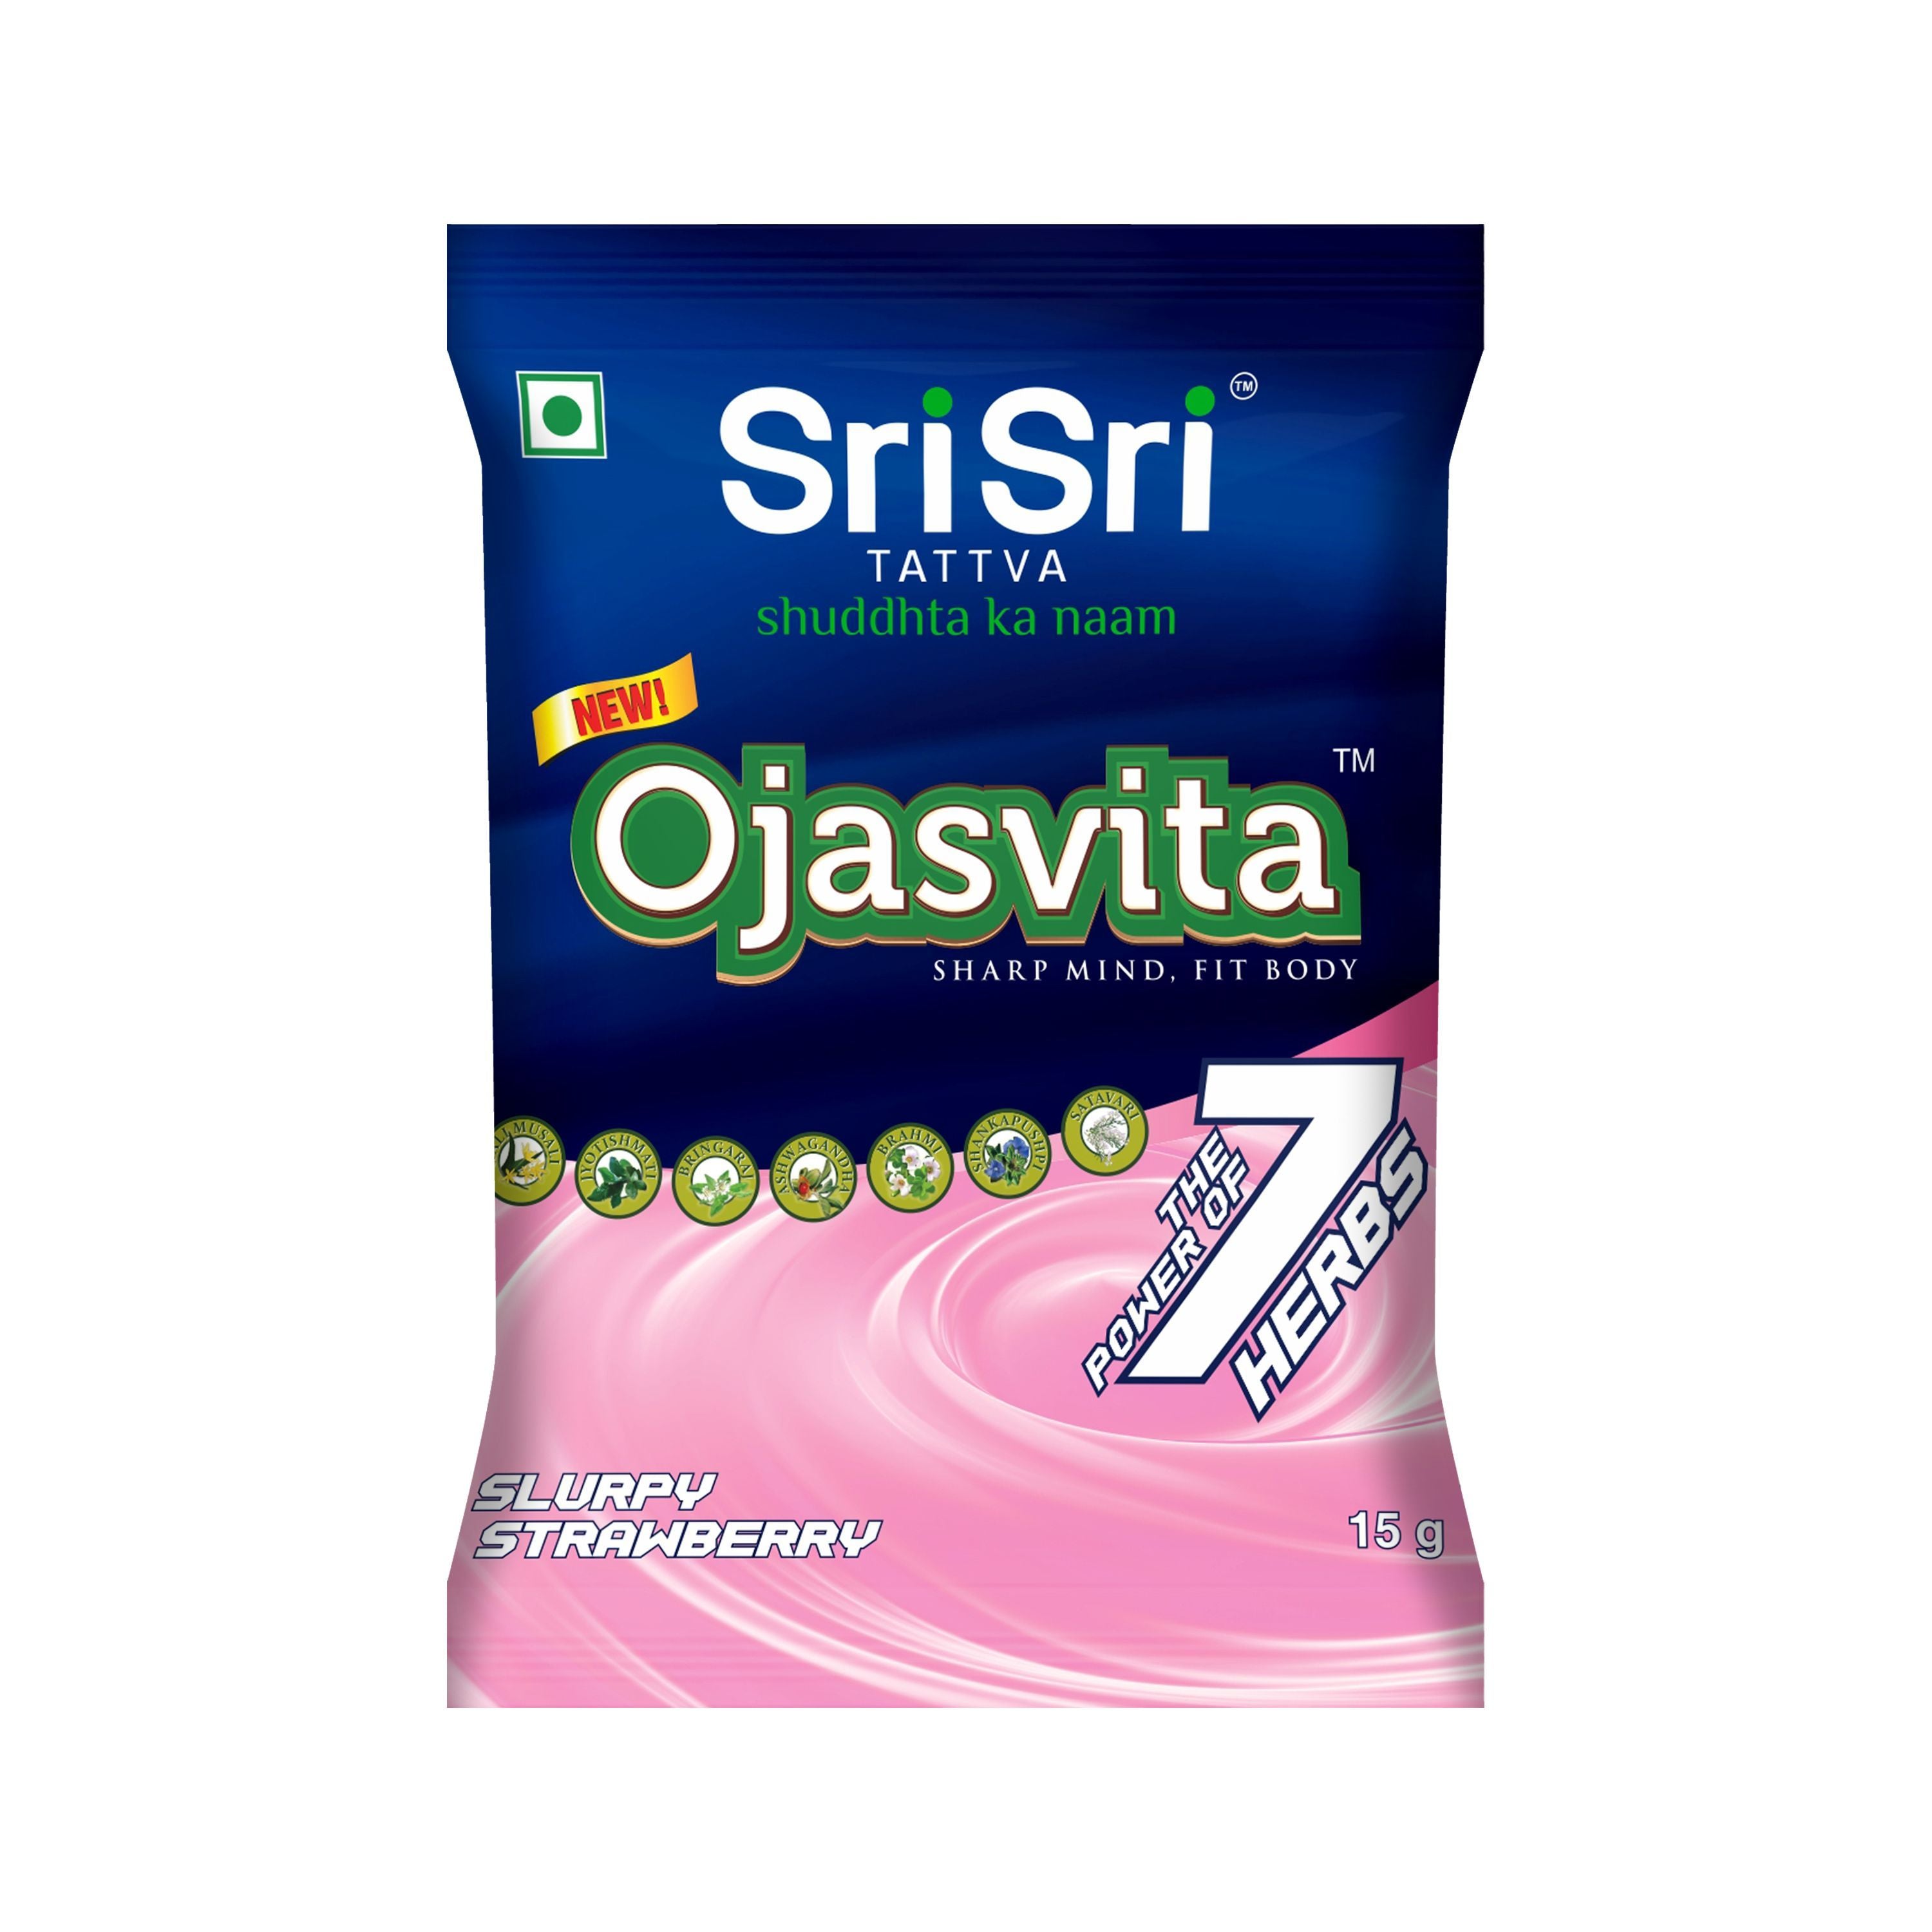 Strawberry Ojasvita  - Sharp Mind & Fit Body, 15g - Sri Sri Tattva